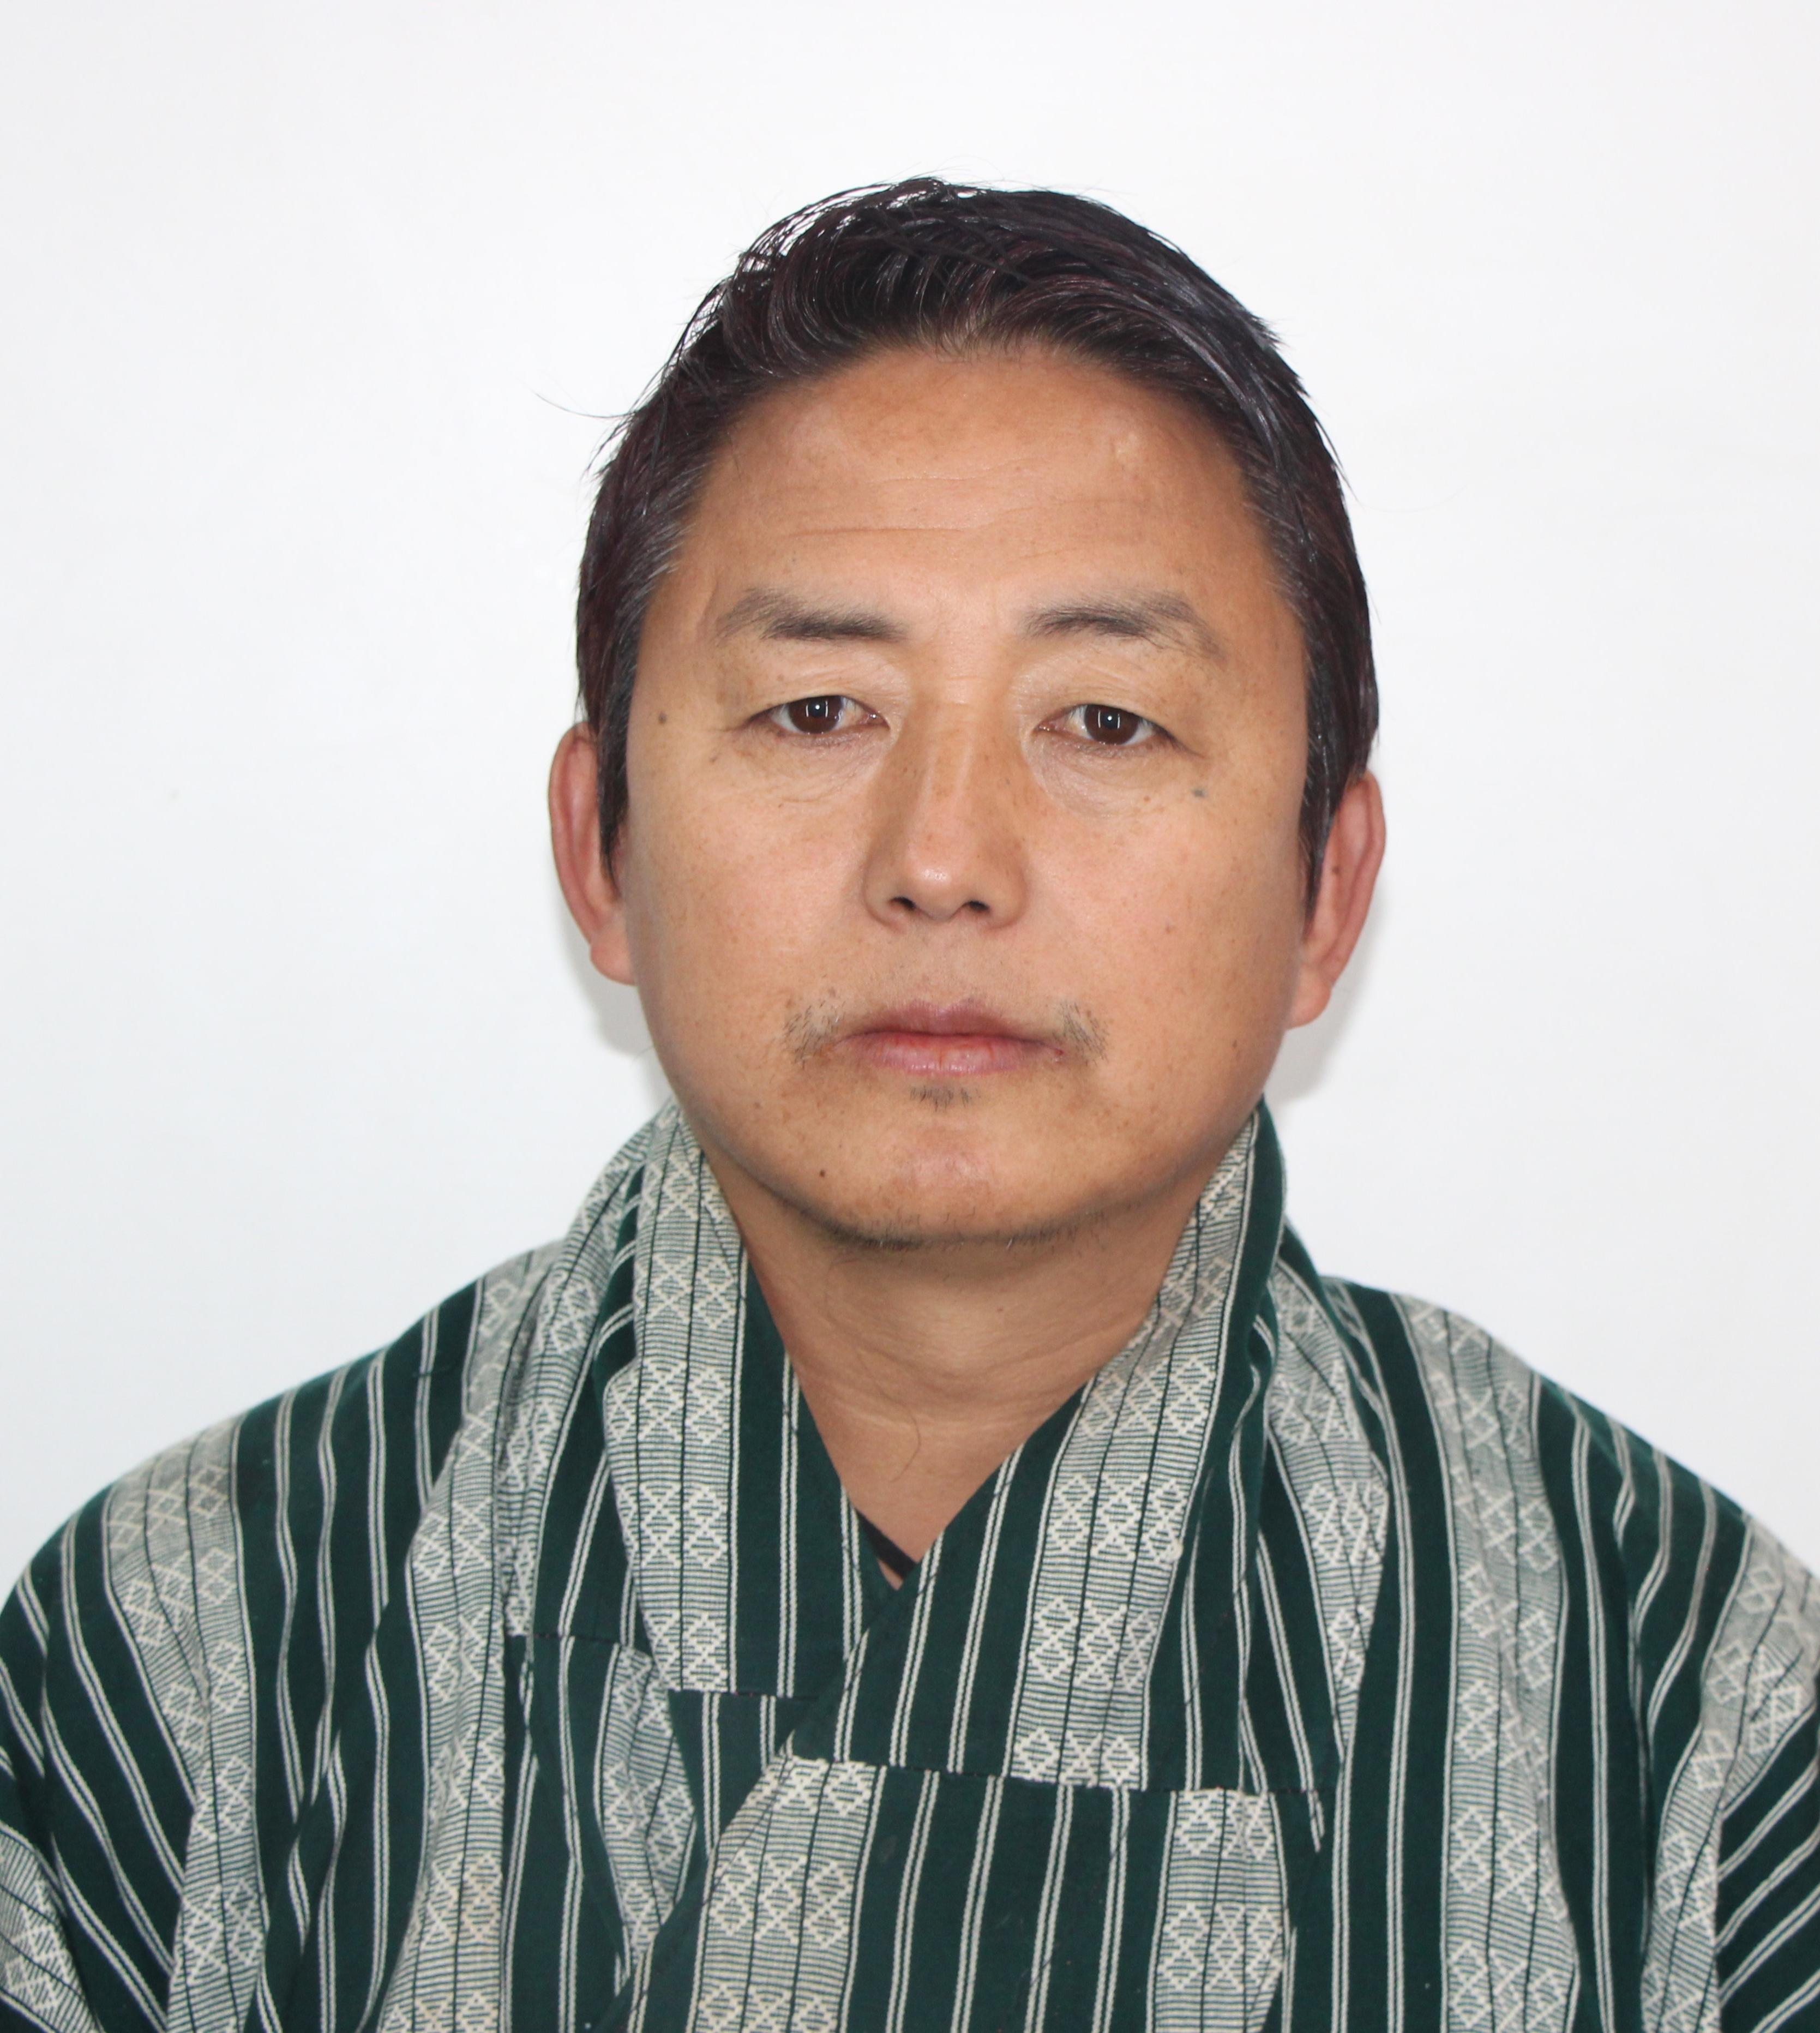 Jigme Dorji